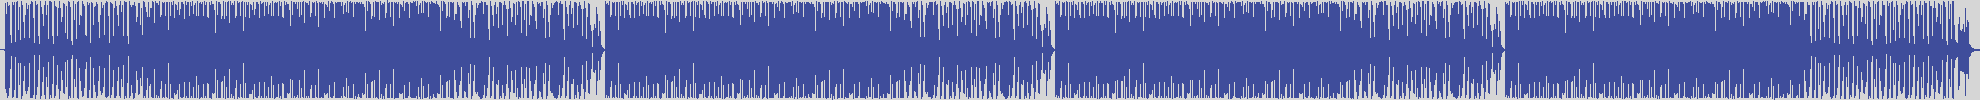 nf_boyz_records [NFY014] Amos Dj - Berlicadora [Original Mix] audio wave form